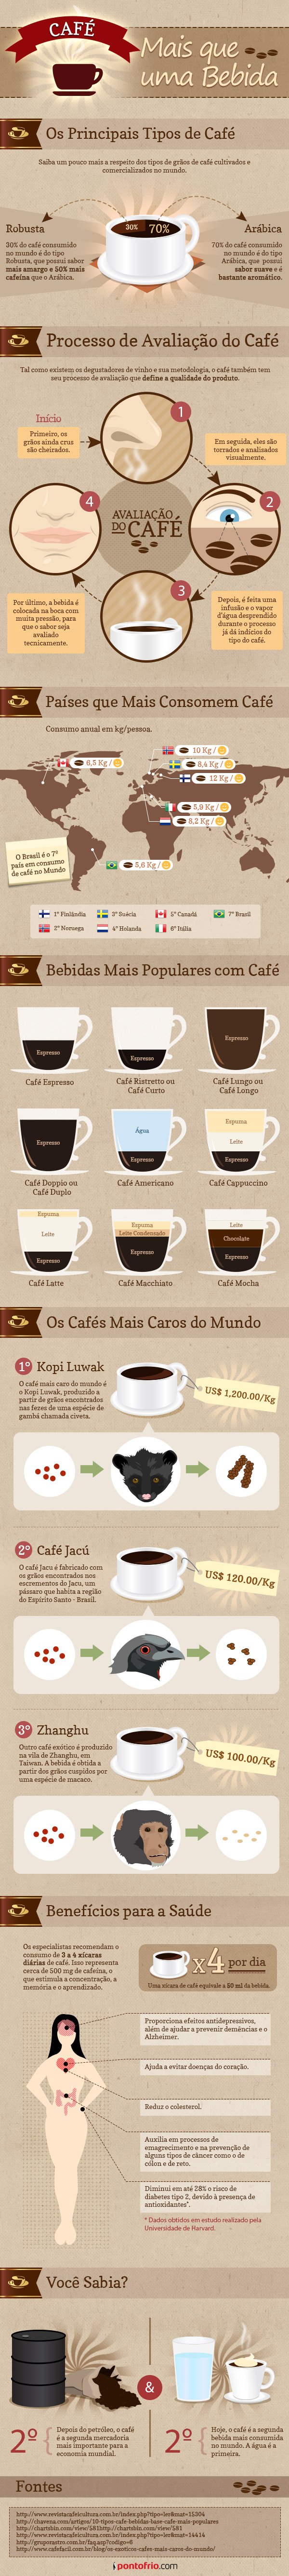 infografico-cafe